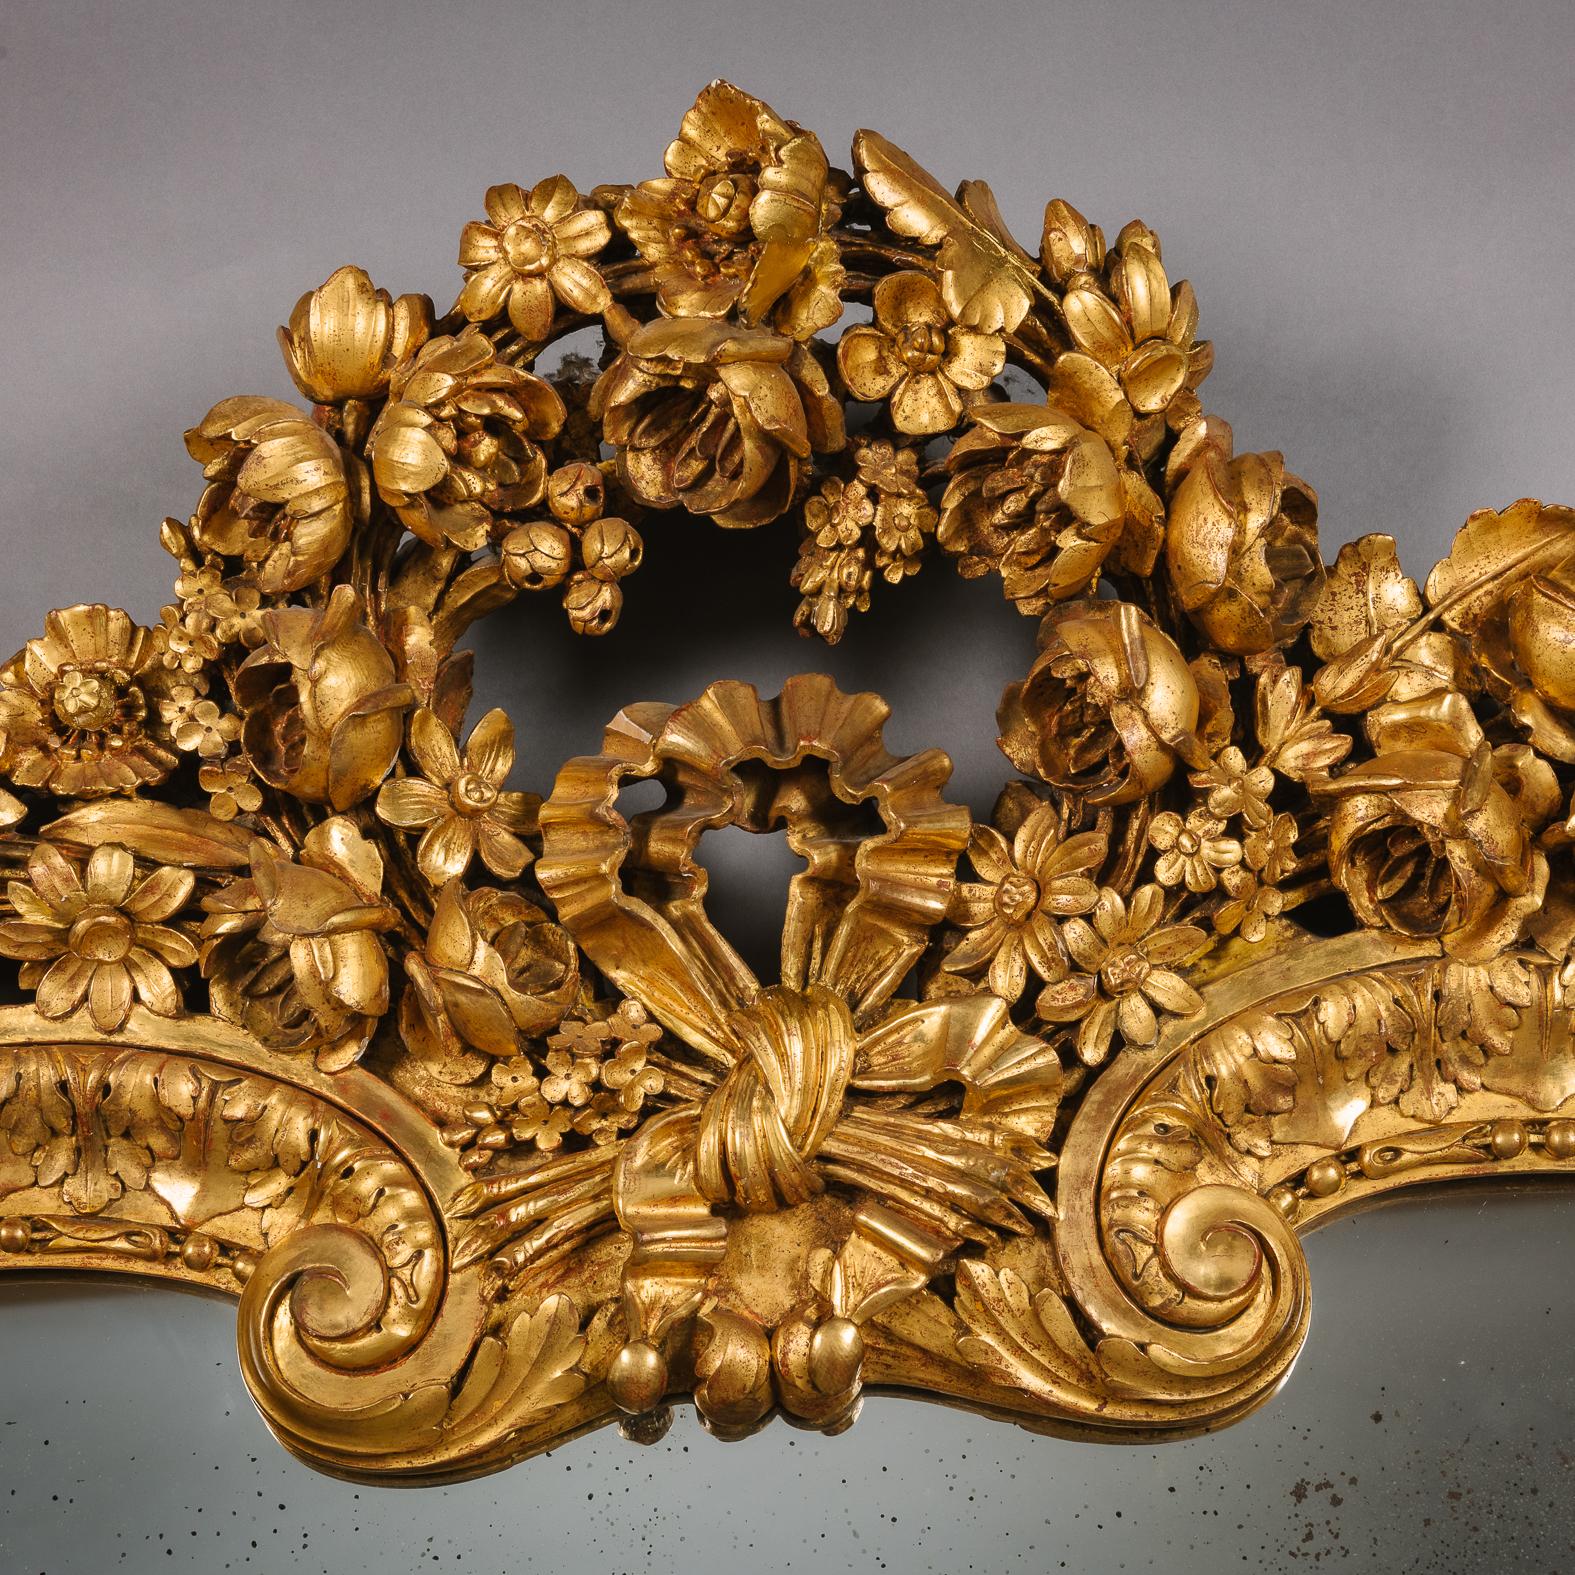 Ein geschnitzter Spiegel aus Goldholz und Gesso im Louis XVI-Stil mit Mantel.

Die gewölbte Spiegelplatte befindet sich in einem Rahmen mit Akanthus- und Lotusblättern, der mit einer Akanthus- und Blattschnitzerei versehen ist, in deren Mitte sich